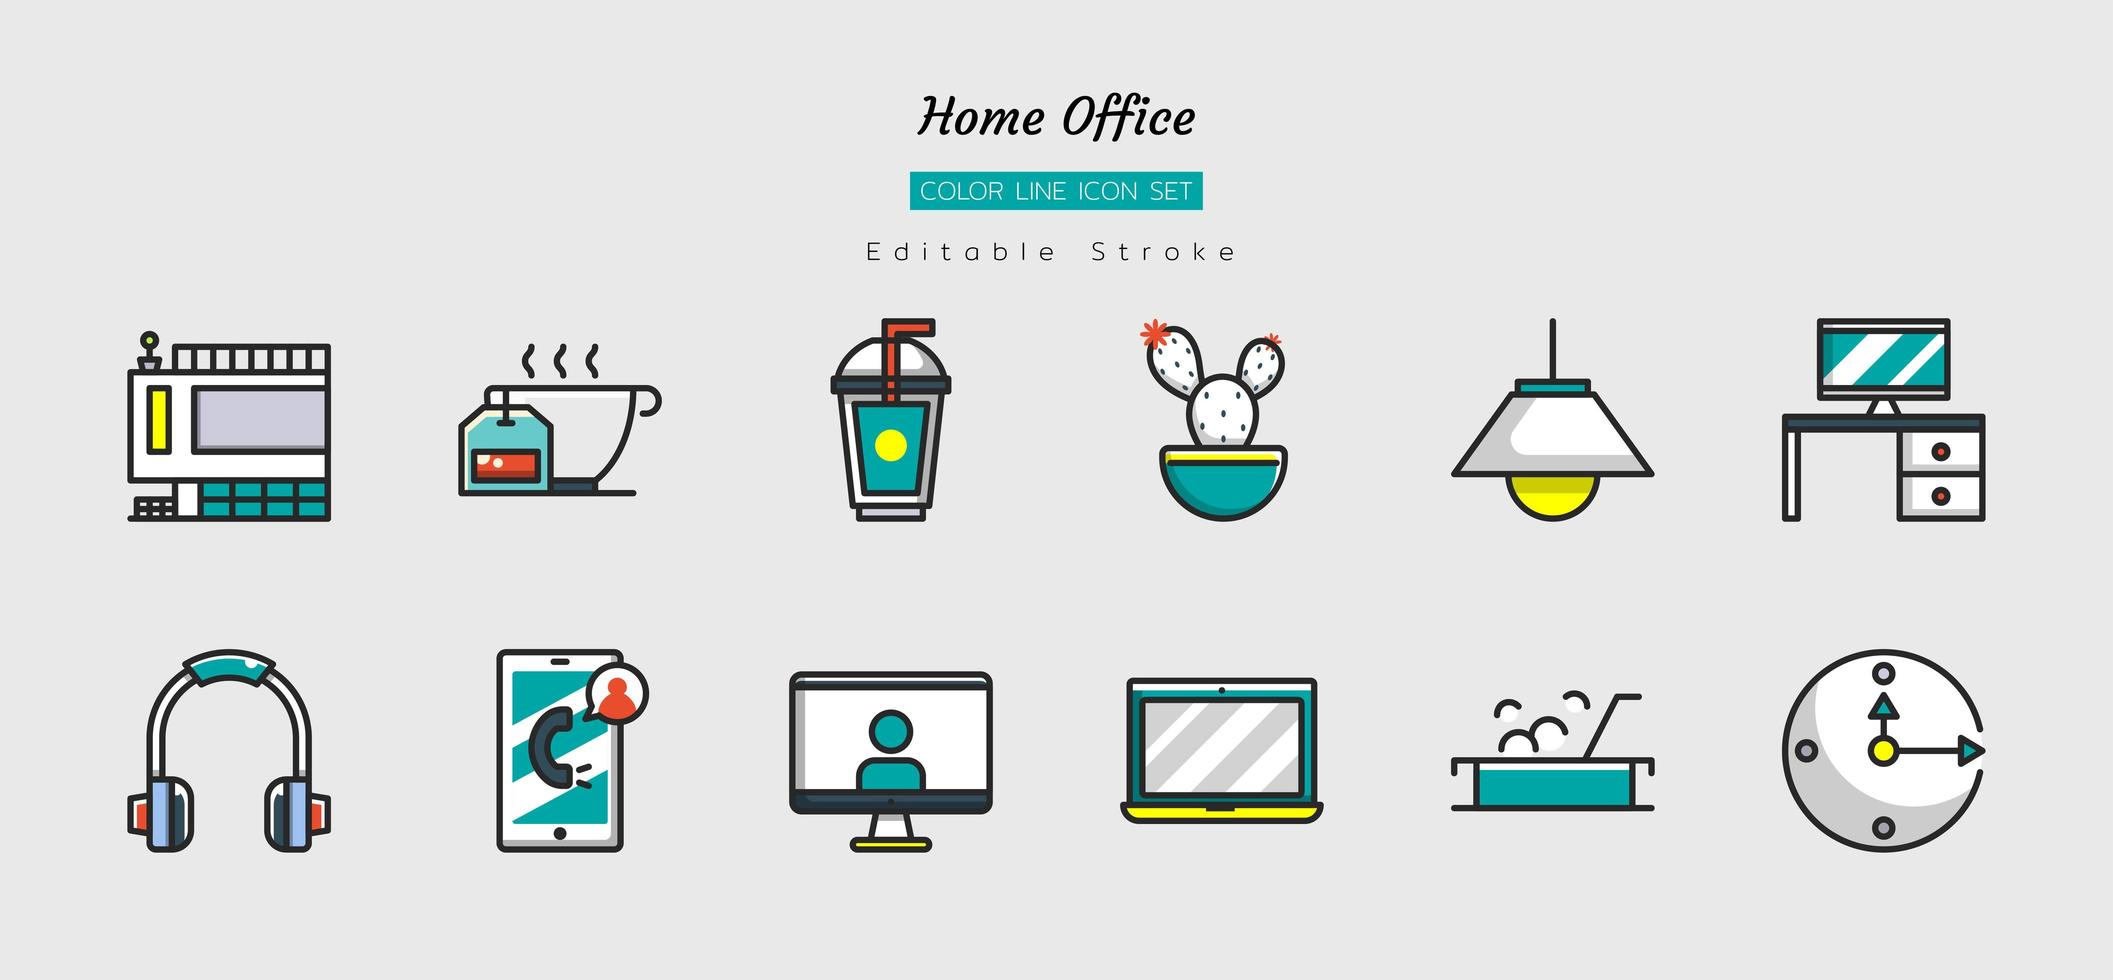 línea de color llena icono de oficina en casa conjunto de símbolos vector